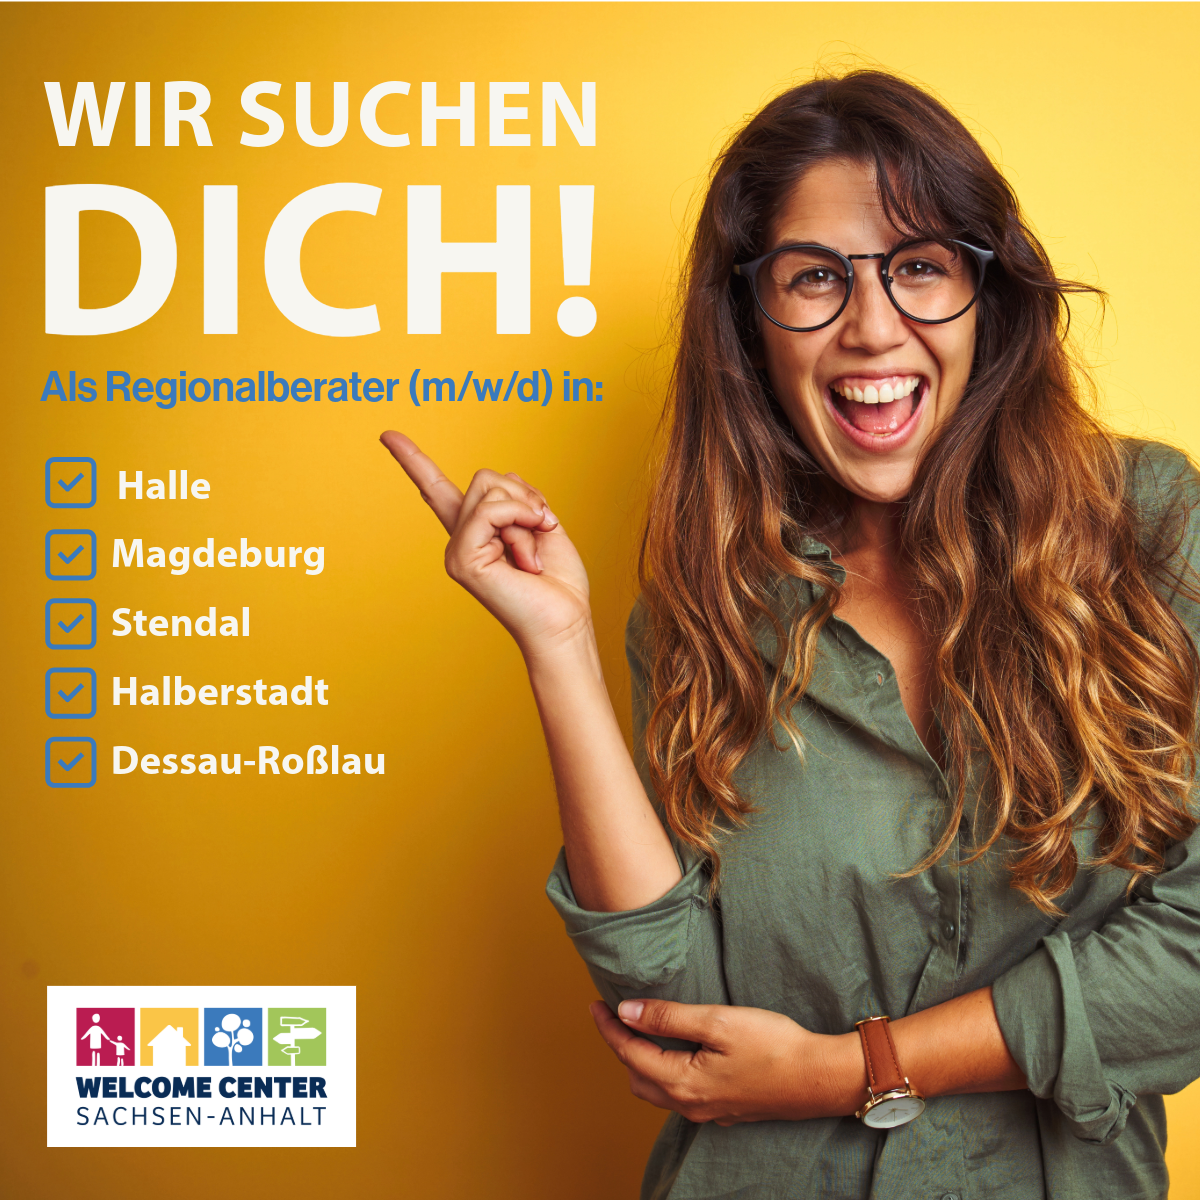 begeisterte Frau, die auf einen Schriftzug zeigt: "WIR SUCHEN DICH! Als Regionalberater (m/w/d) in: Halle, Magdeburg, Stendal, Halberstadt, Dessau-Roßlau"